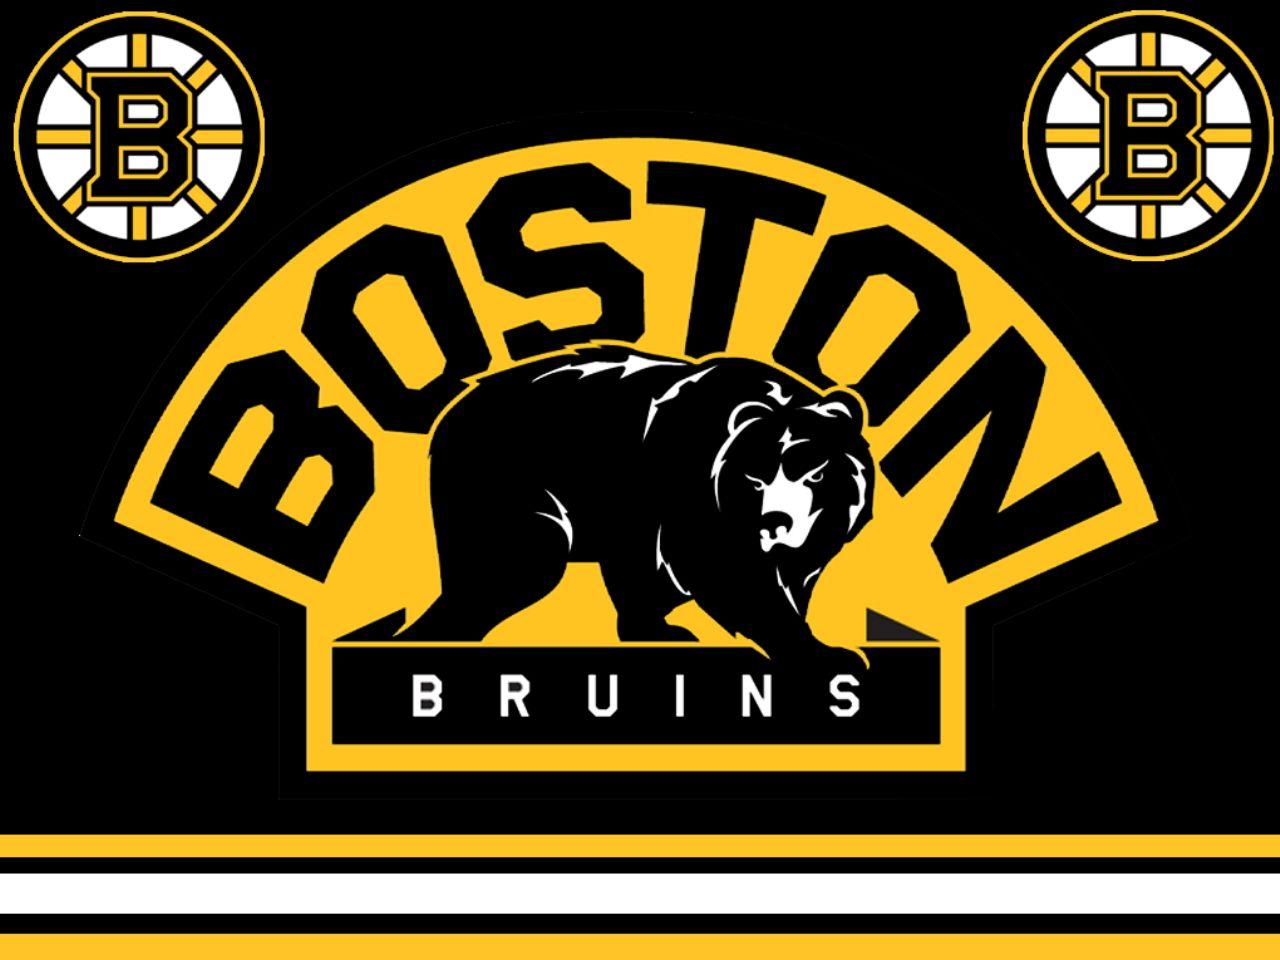 1280x960 Tải xuống miễn phí Hình nền Boston Bruins Hình nền Boston Bruins Trang 7 [1280x960] cho Máy tính để bàn, Di động & Máy tính bảng của bạn.  Khám phá Hình nền Boston Bruins.  Nhl Logo hình nền, Boston Bruins Logo hình nền, NHL hình nền và nền